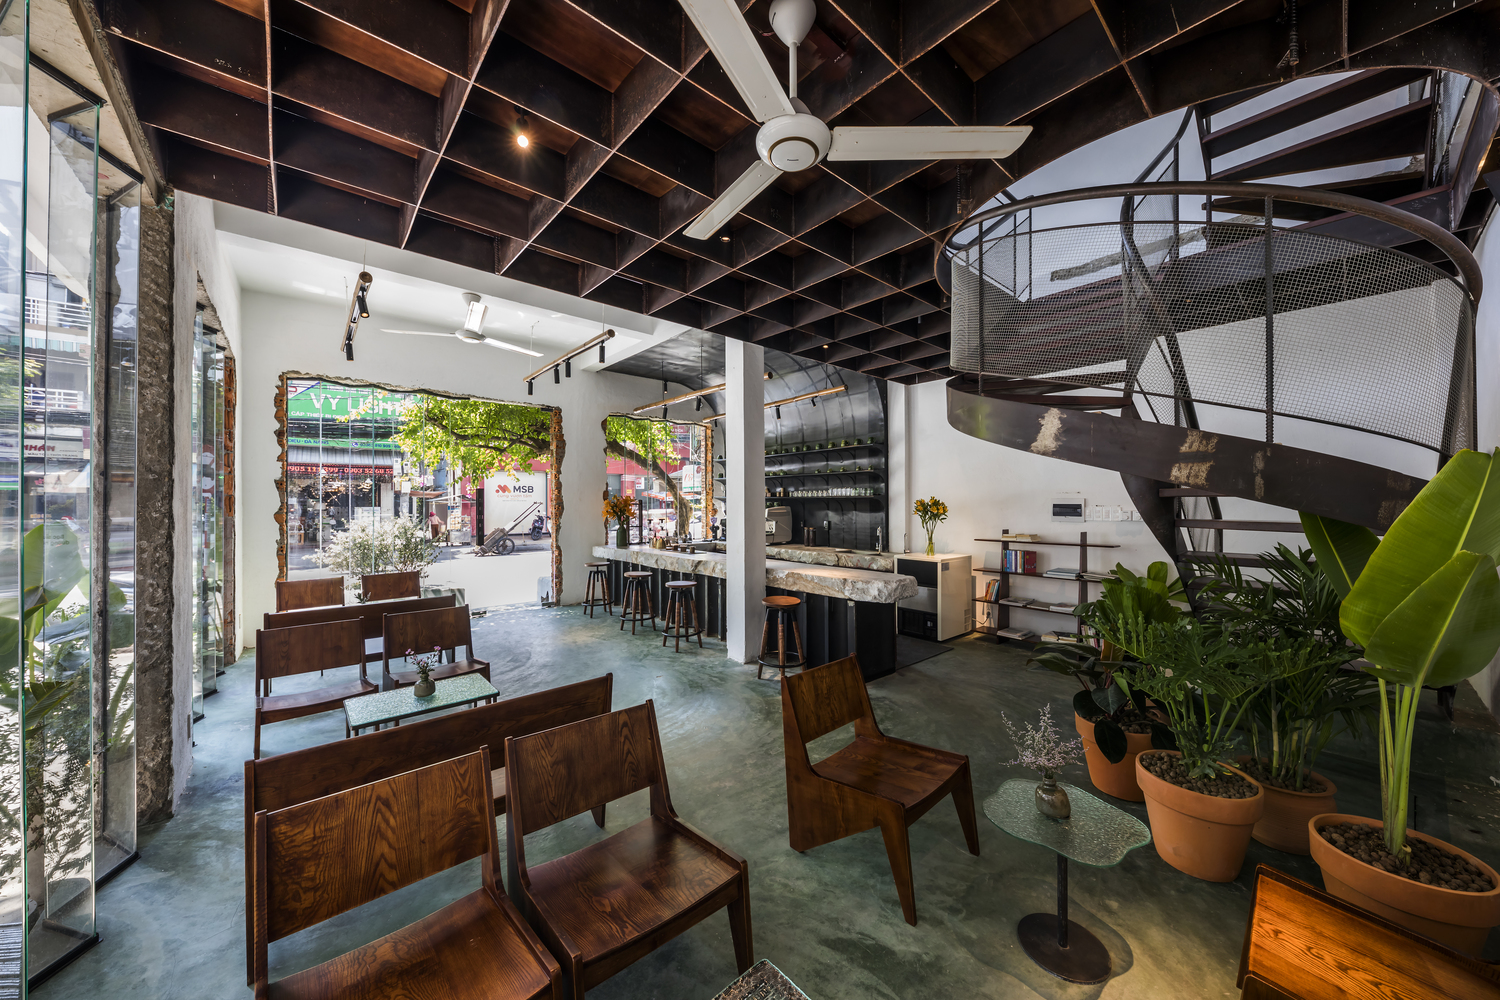 hình ảnh tầng trệt quán cà phê với sàn bê tông màu xanh ngọc, dầm gỗ sẫm màu, bàn ghế gỗ nhỏ gọn phong cách truyefn thống, cầu thang uốn lượn, cửa kính trong suốt